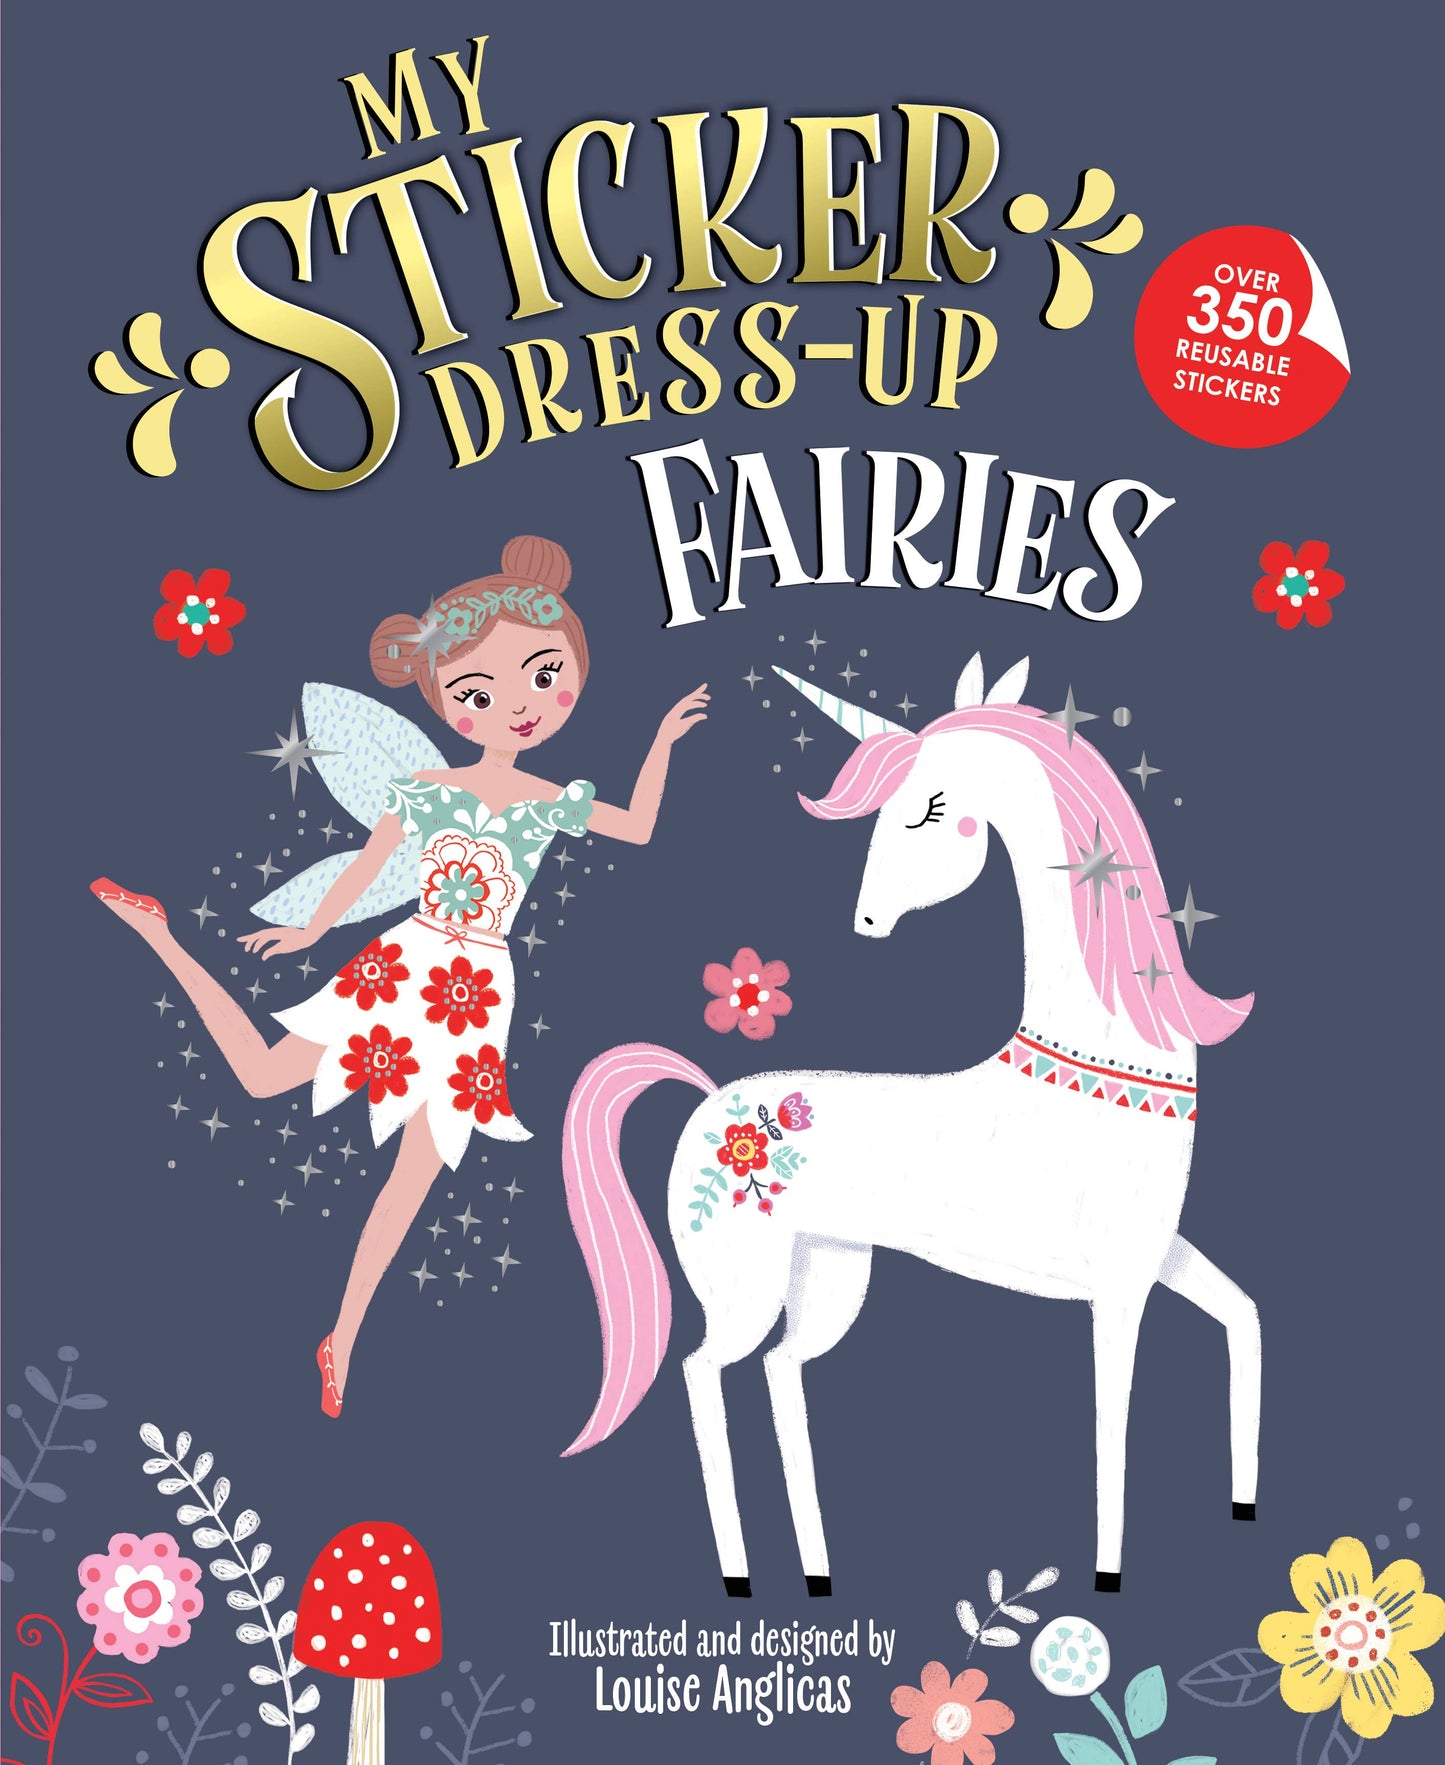 My Sticker Dress-Up Book: Fairies